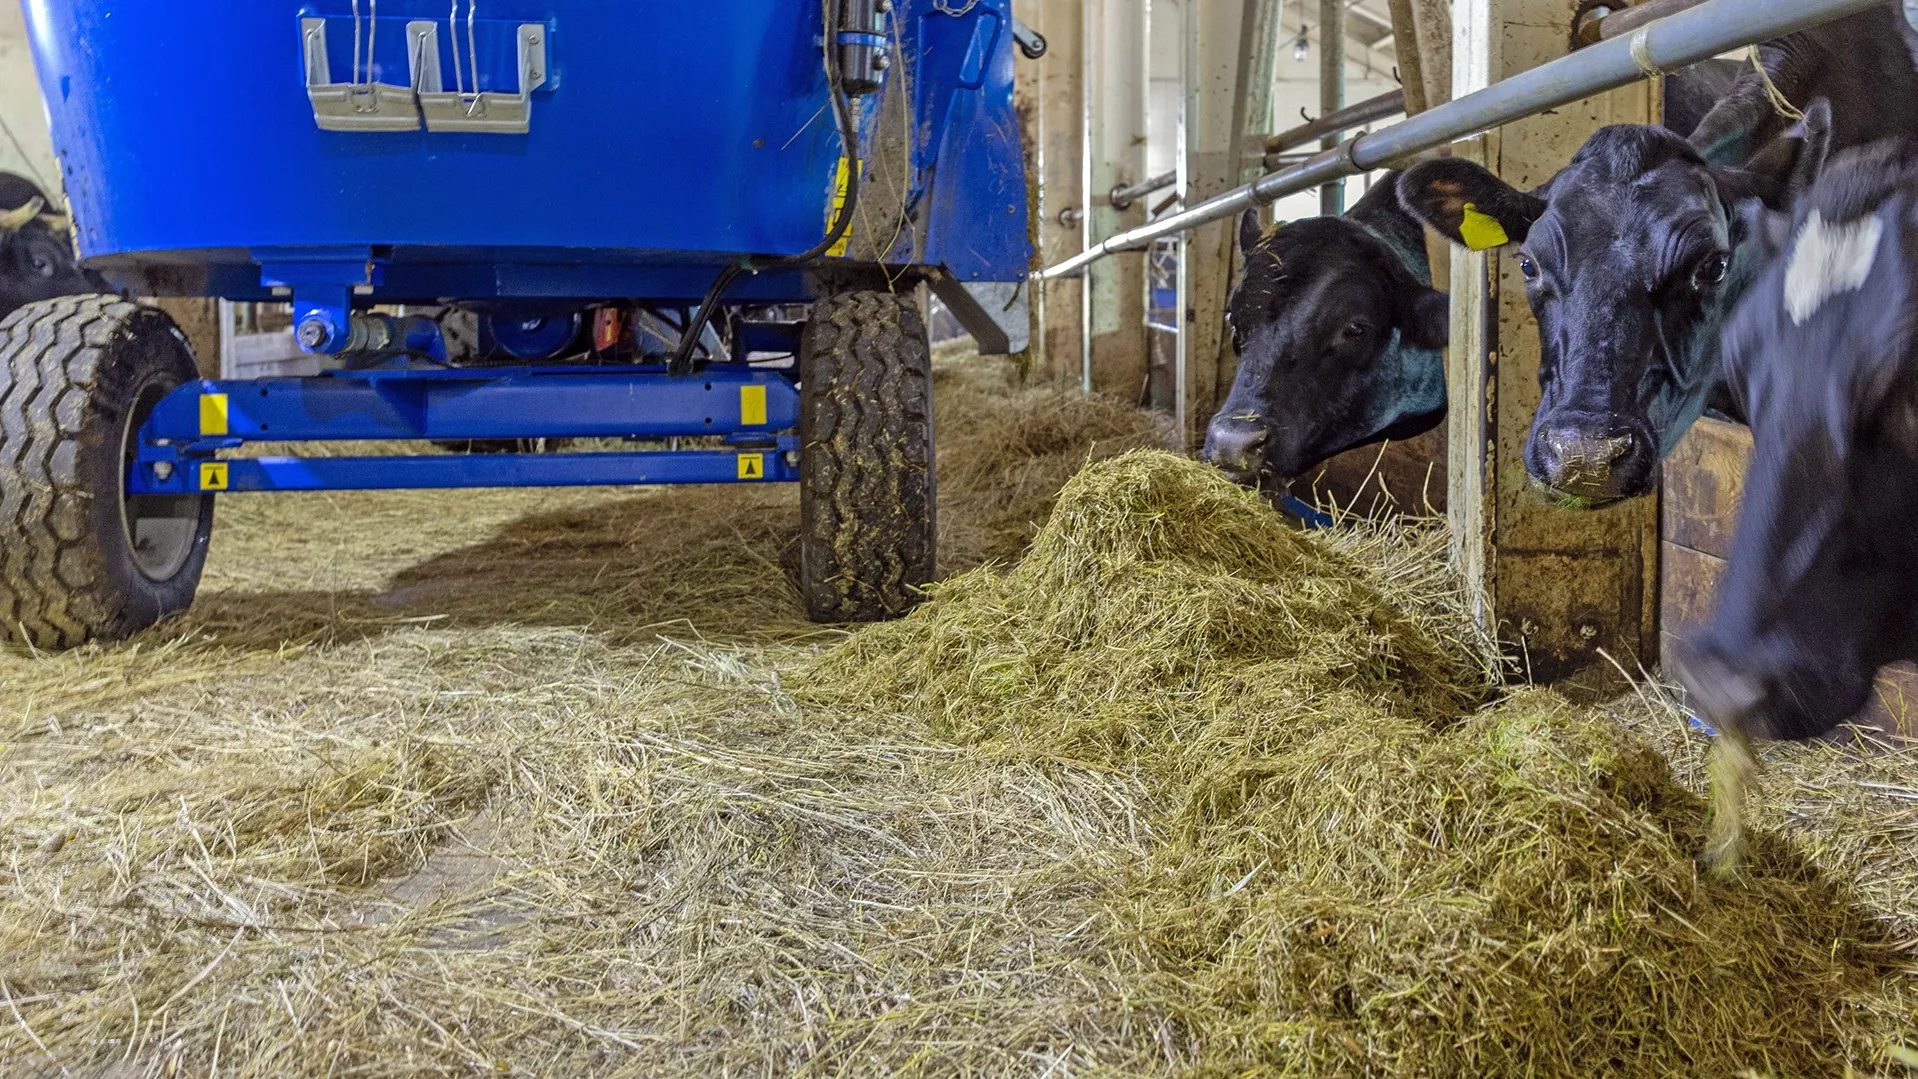 Измельченный зеленый корм порциями подается коровам. Фото: Федор Воронов / «Ямал-Медиа»